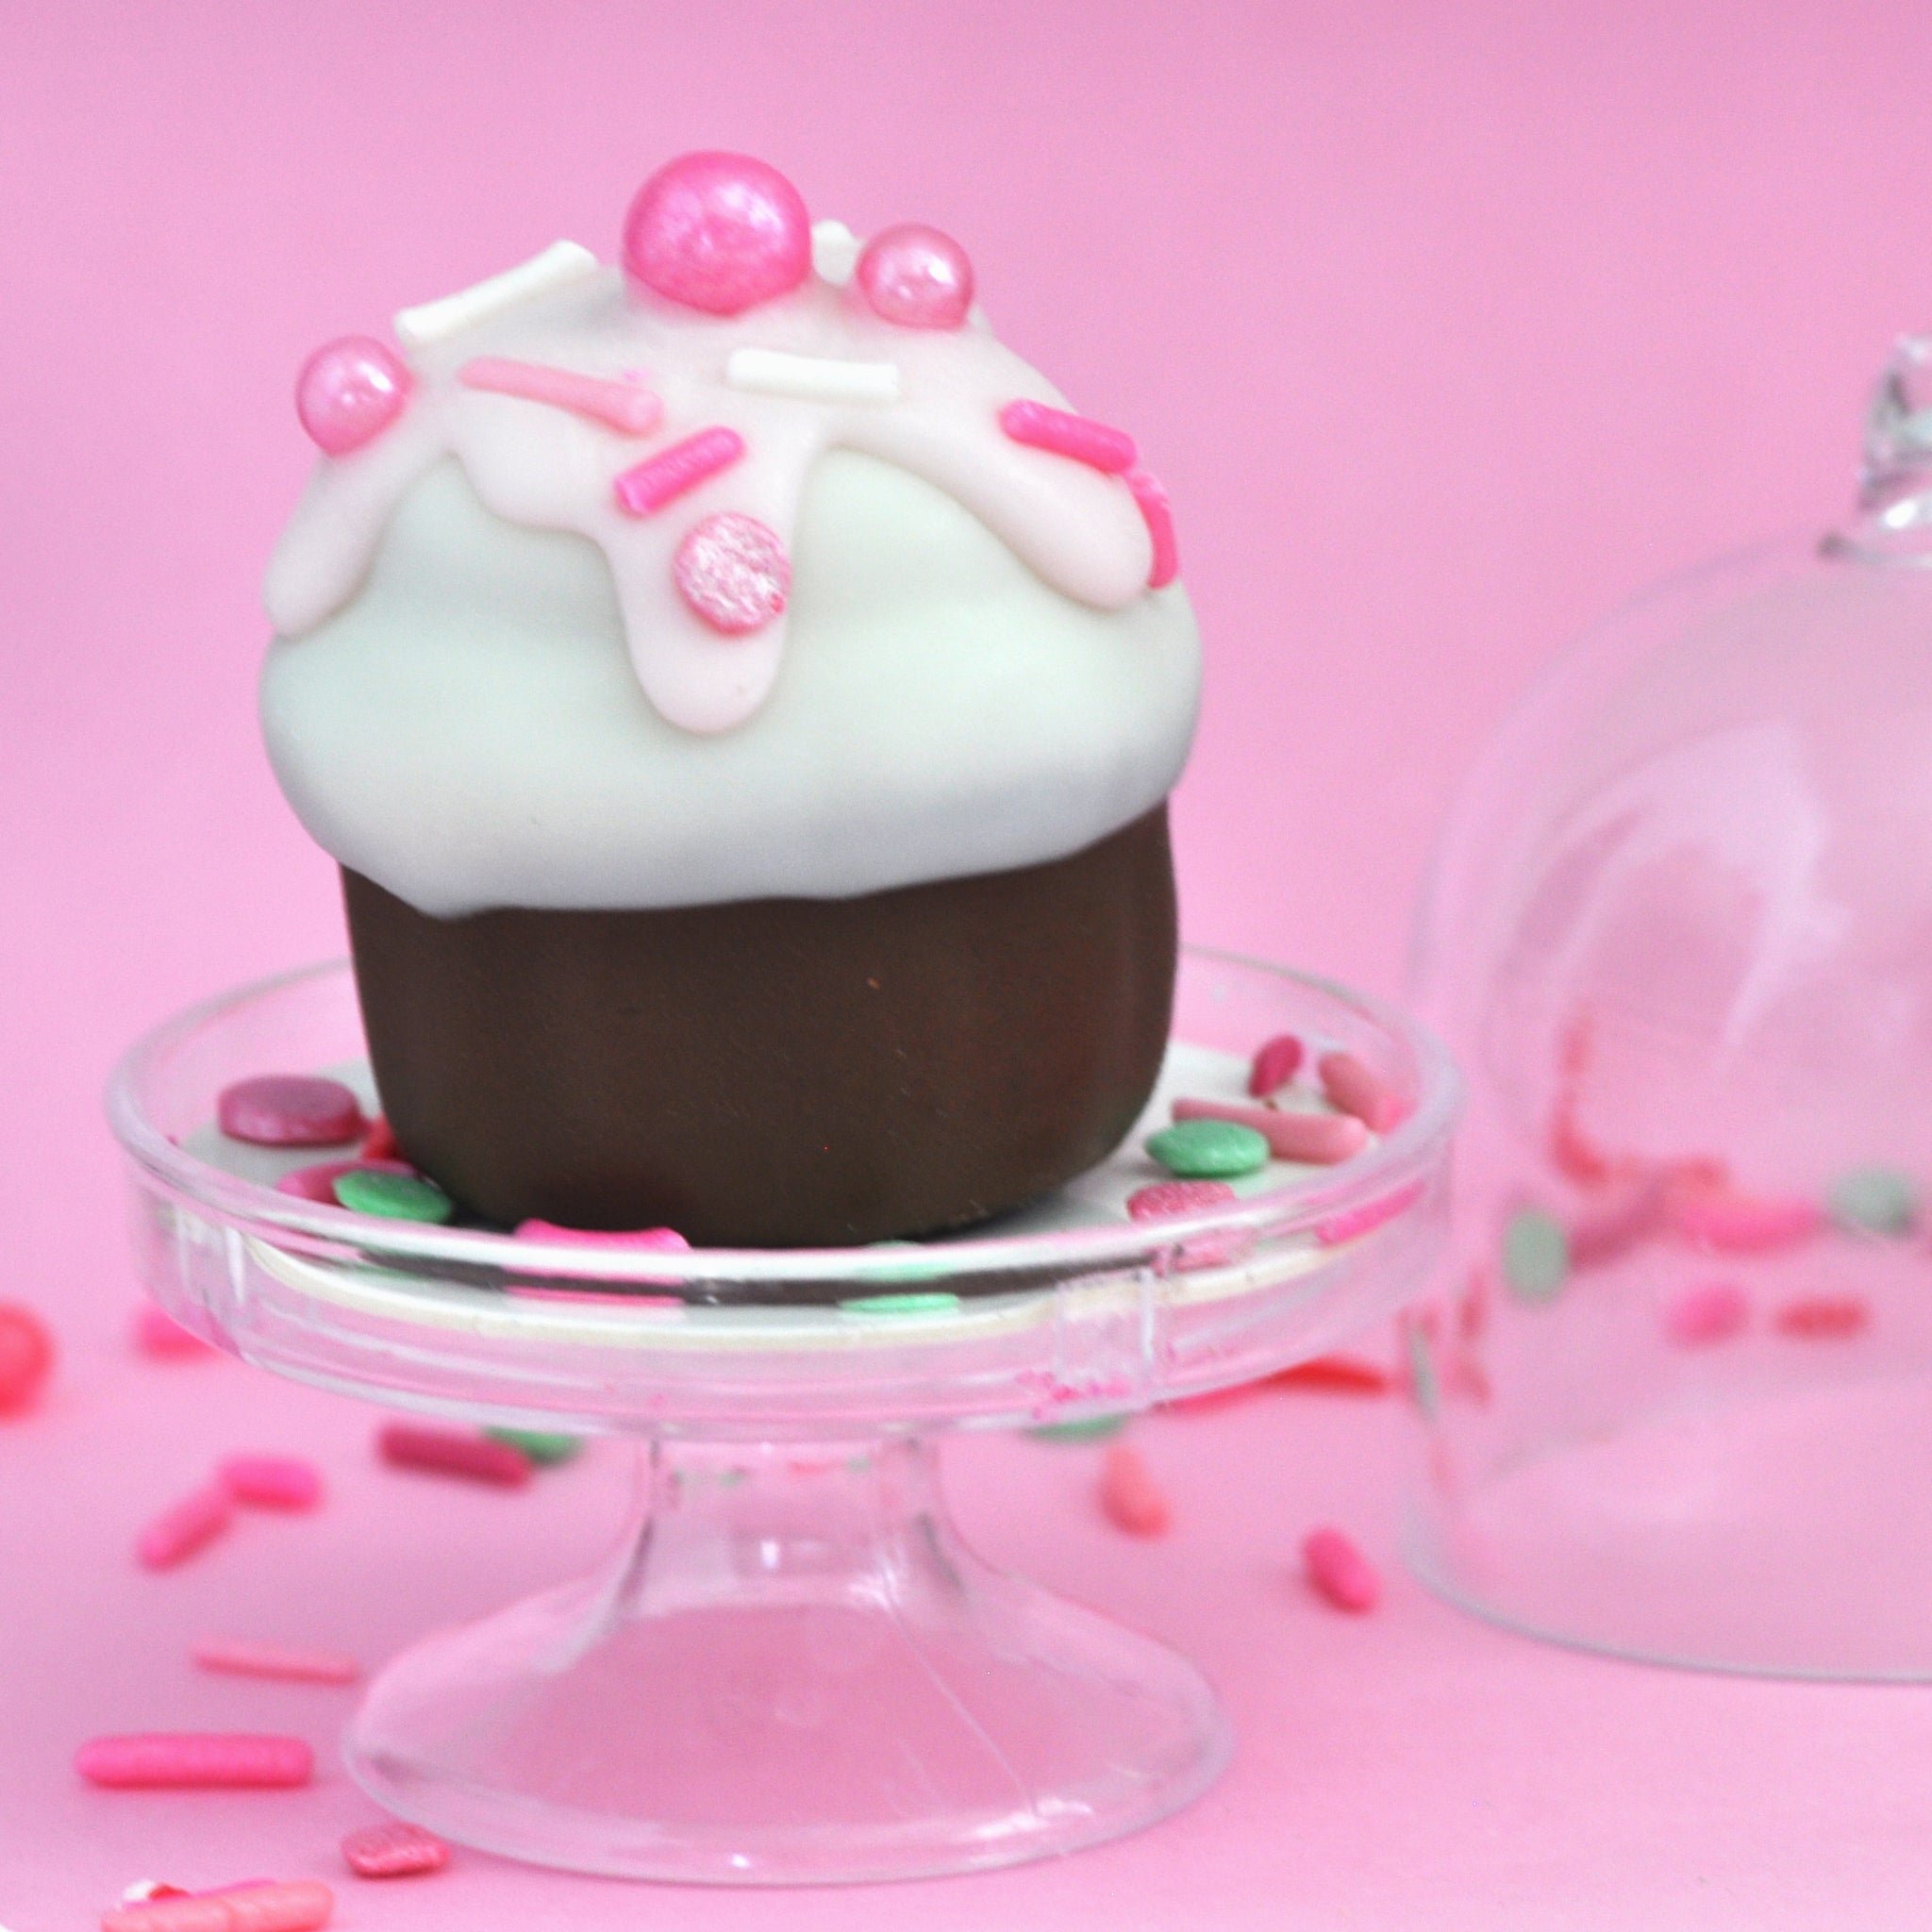 Round 1oz Cake Pop Mold – My Little Cakepop, llc